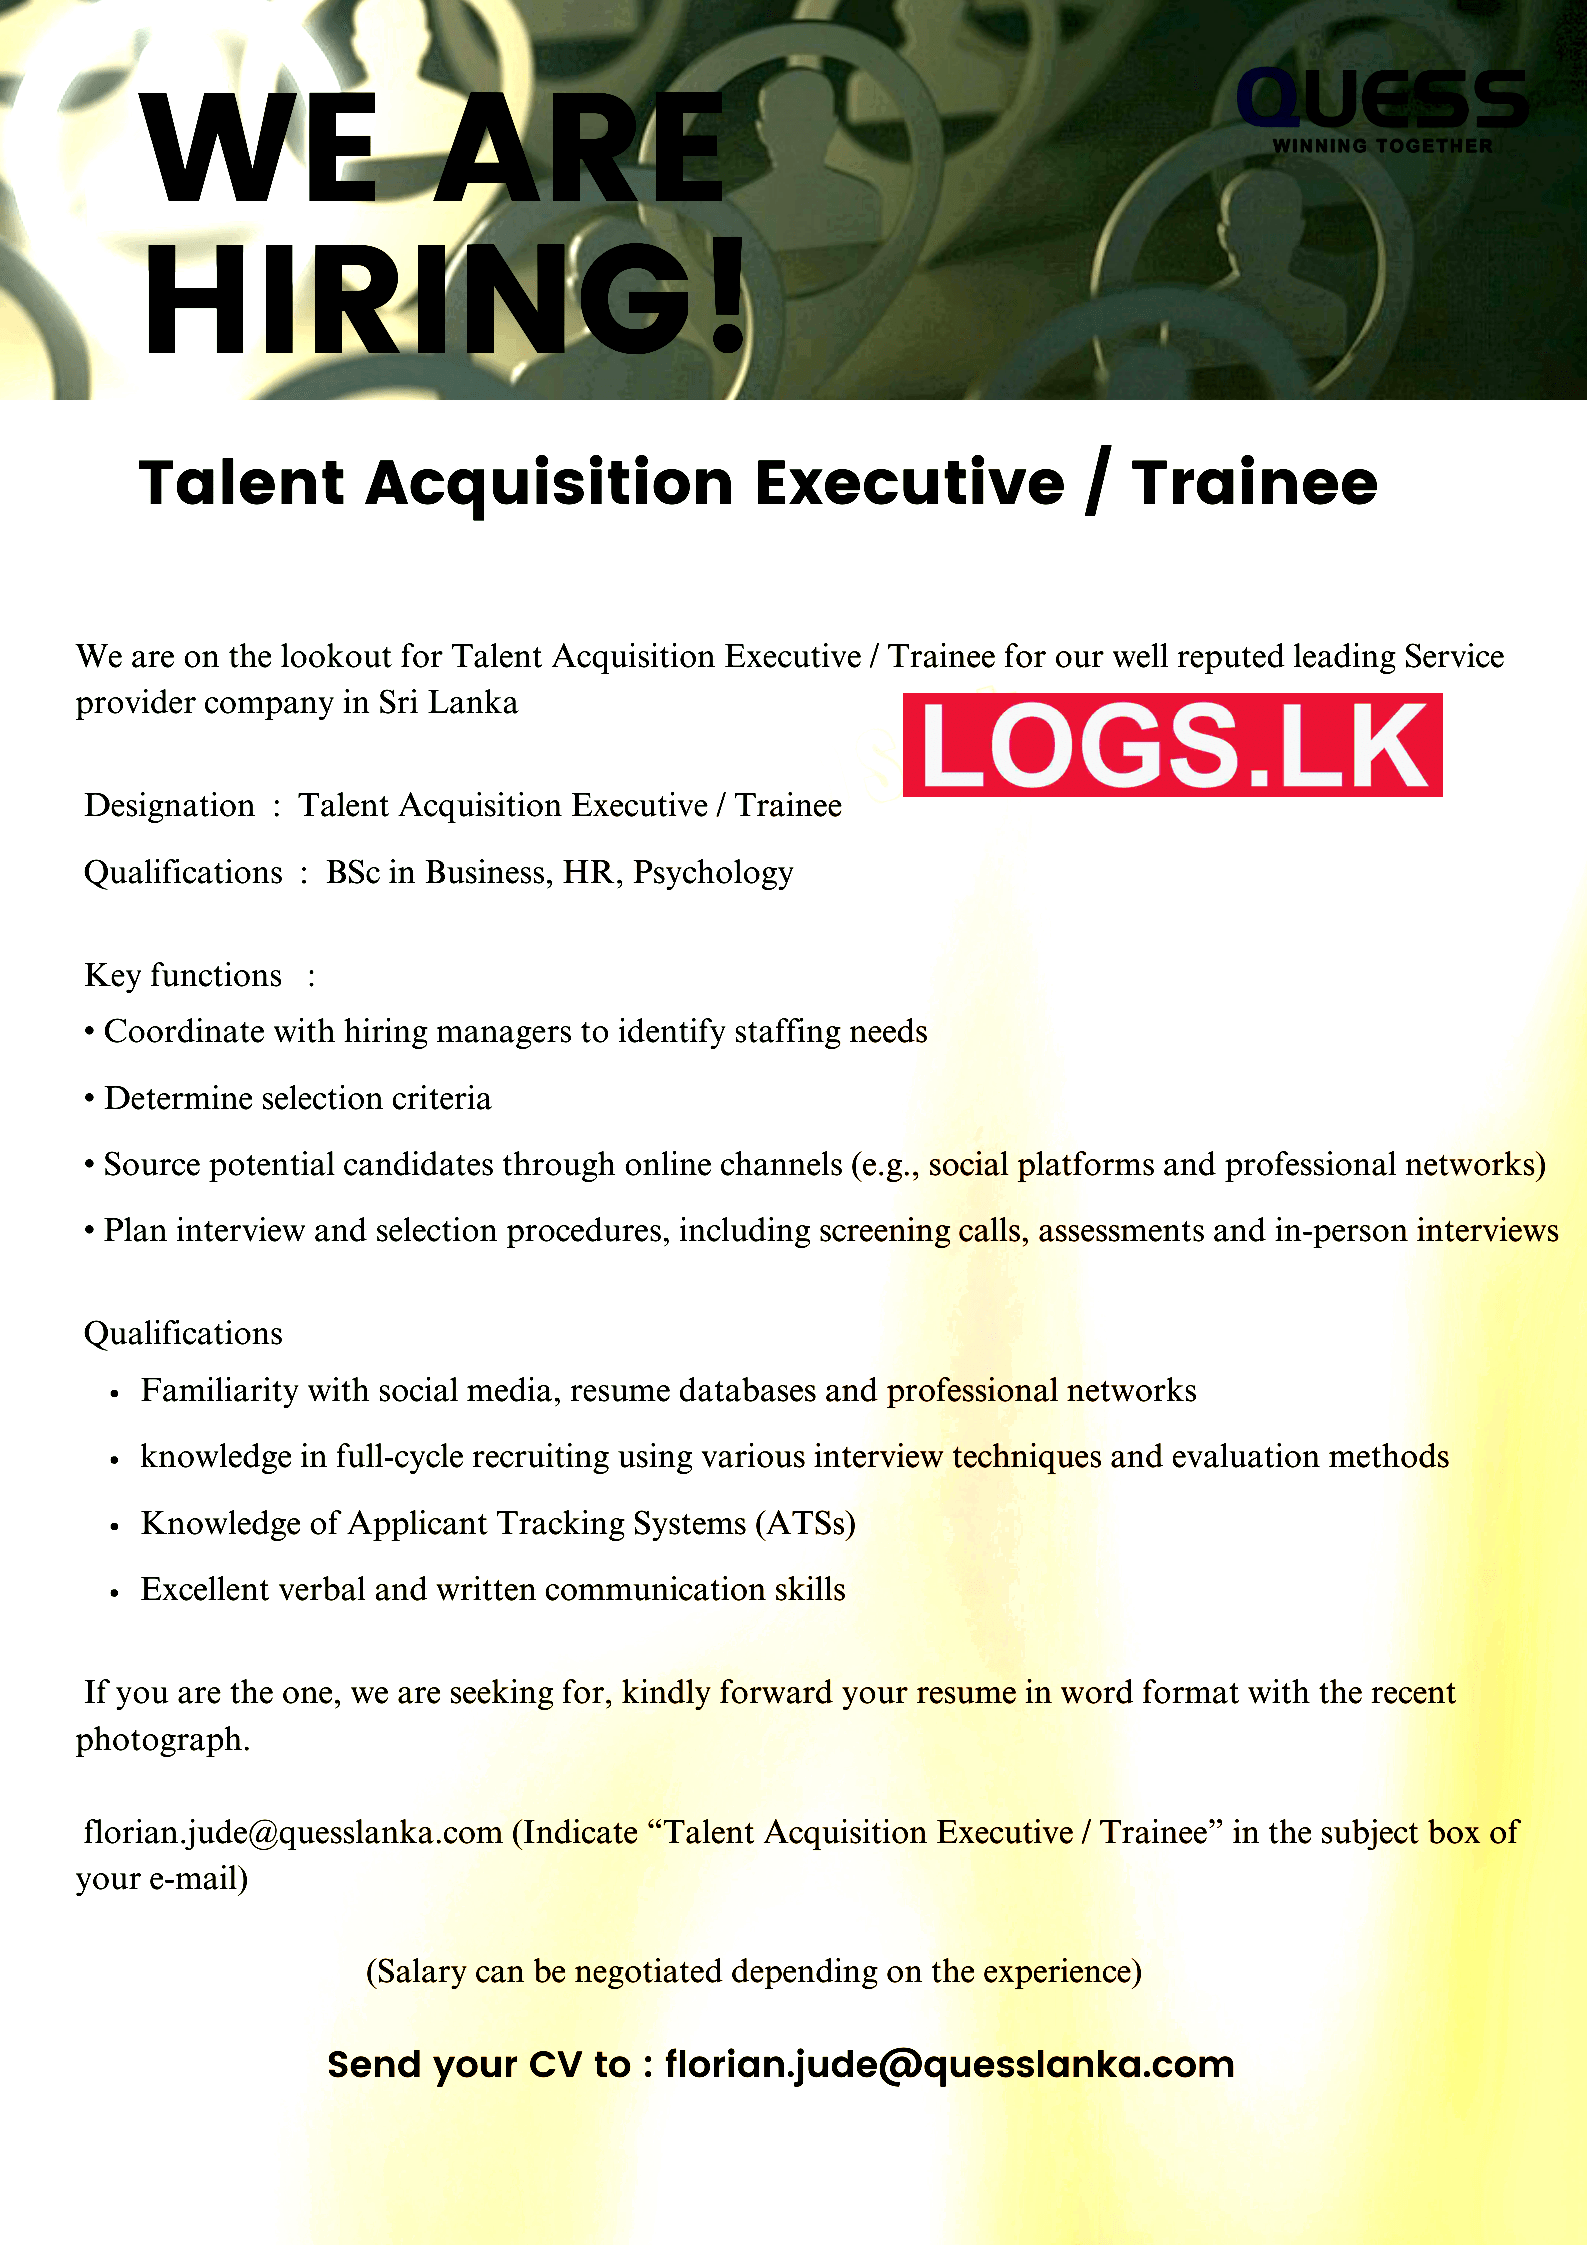 Talent Acquisition Executive Job Vacancy at Quess Corp Lanka Job Vacancies